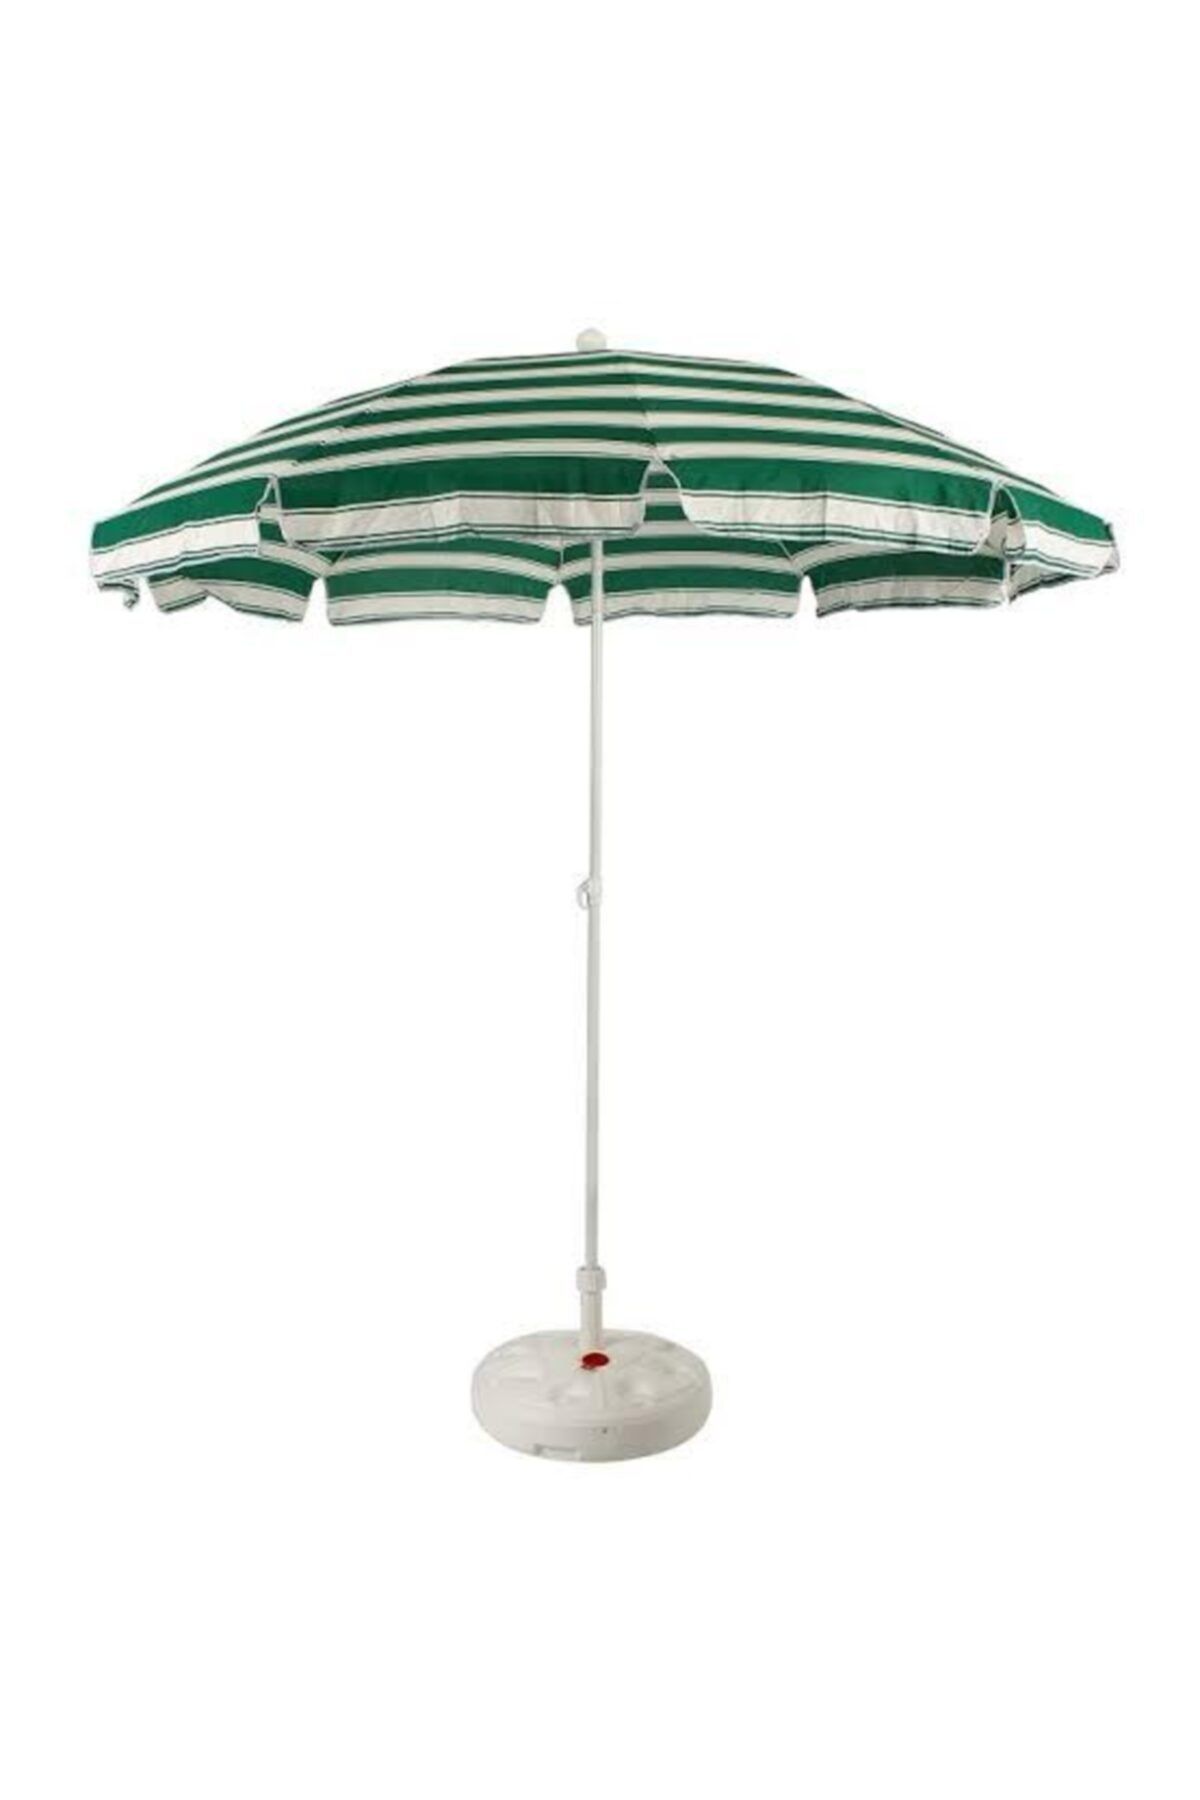 snotline Plaj Şemsiyesi Bahçe Teras Balkon Masa Havuz Başı Şemsiye